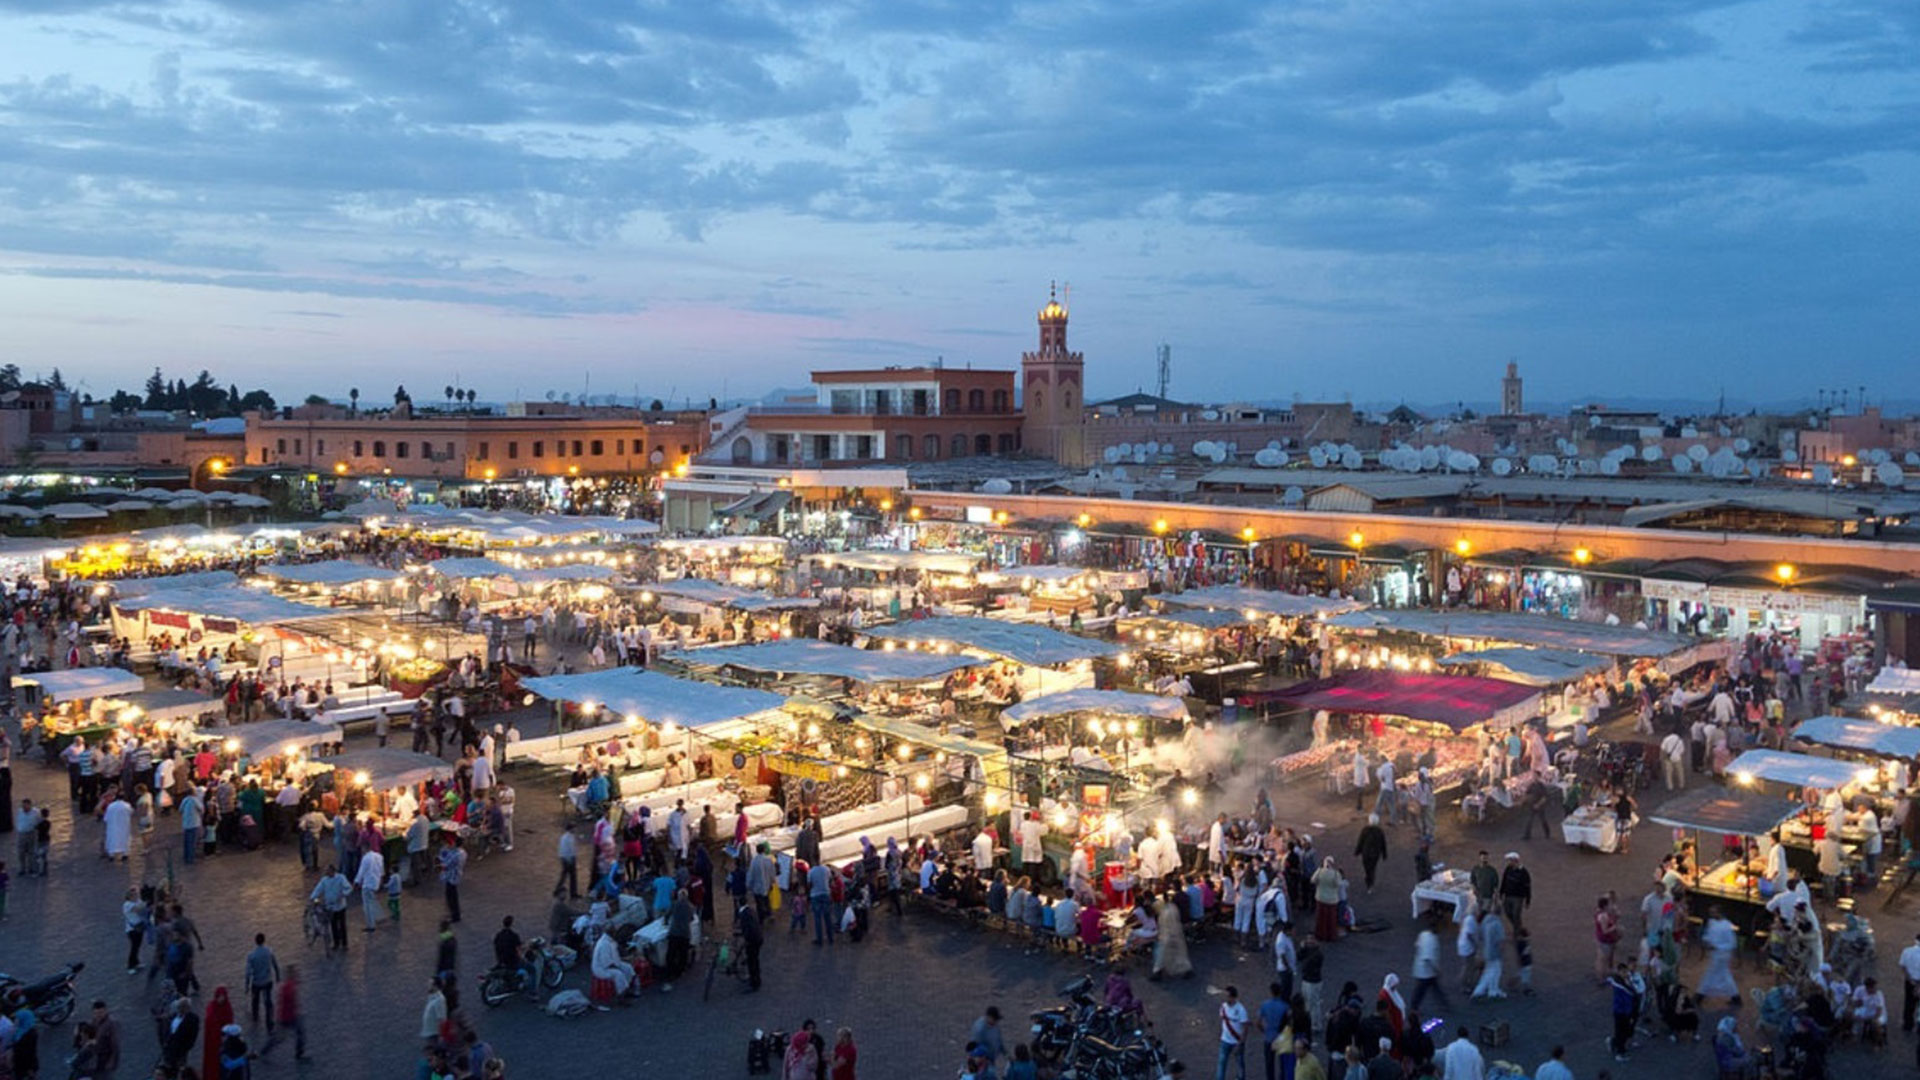 ساحةُ جامعِ الفَنا، المغرب - ميدانُ رزقٍ لا يَنتهي